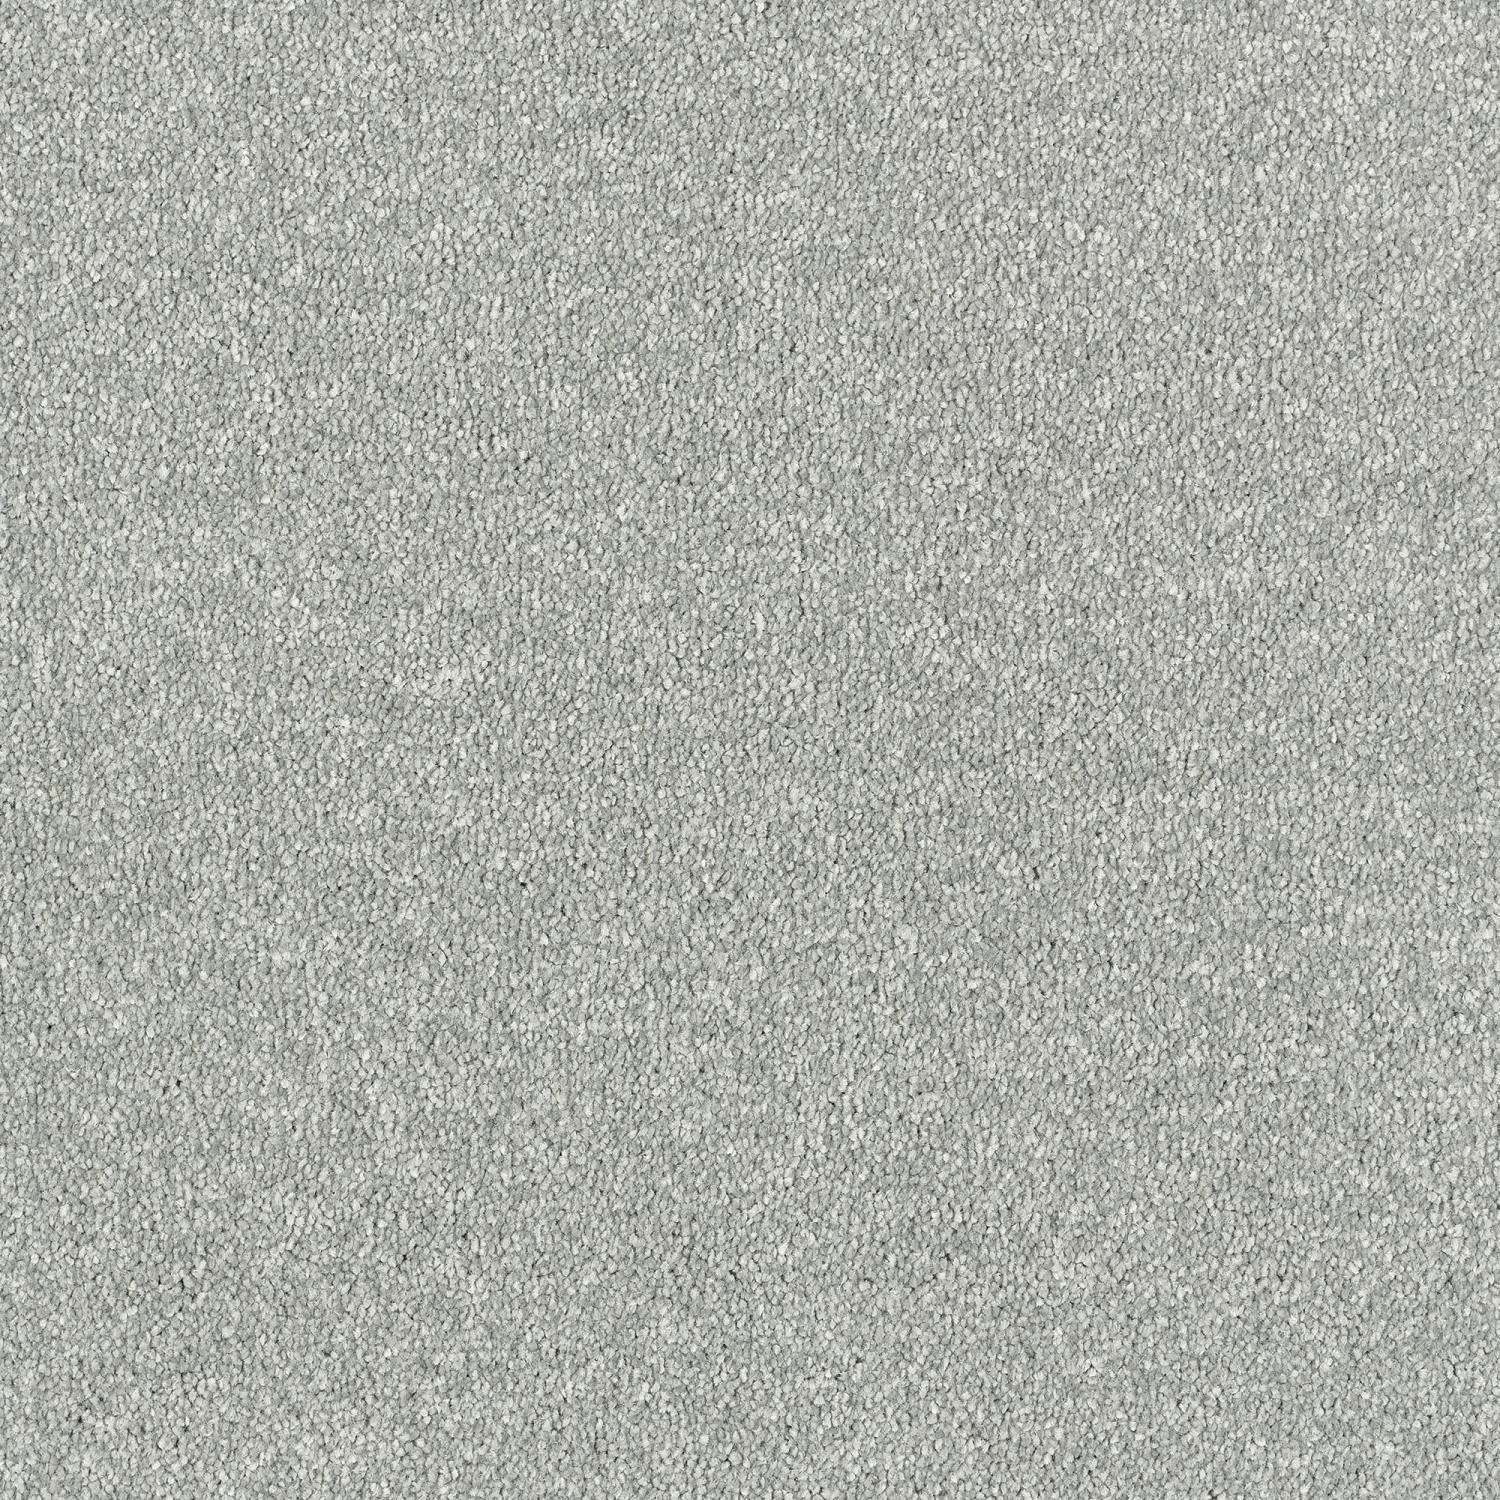 Stainfree Maximus Saxony Carpet - Platinum